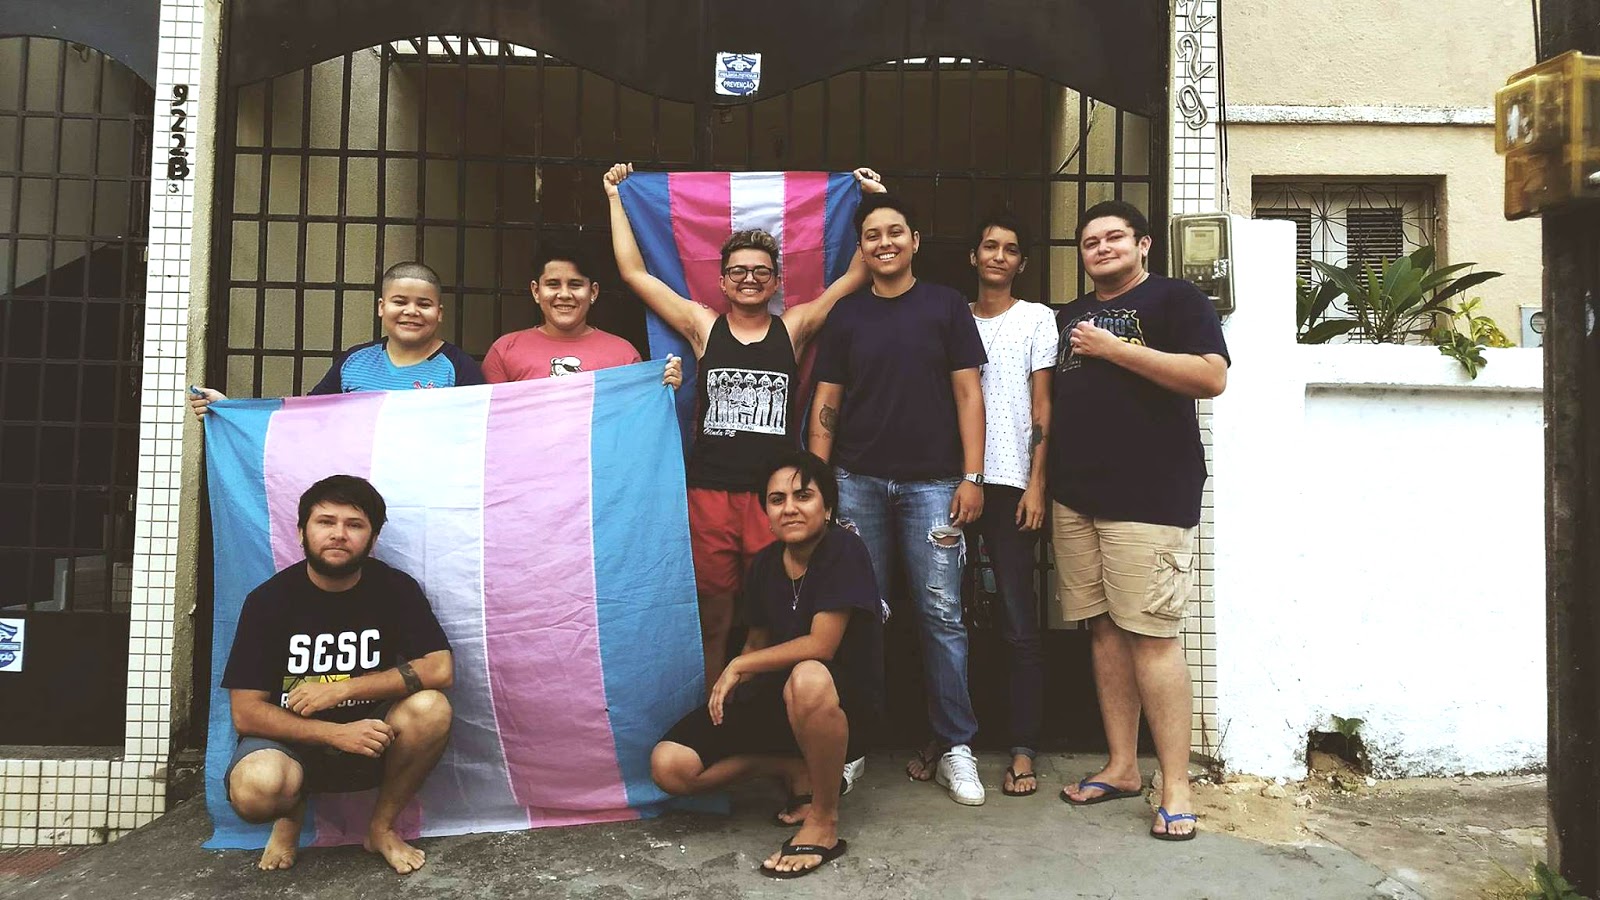 O abrigo Thadeu Nascimento acolhe homens trans em situação de vulnerabilidade